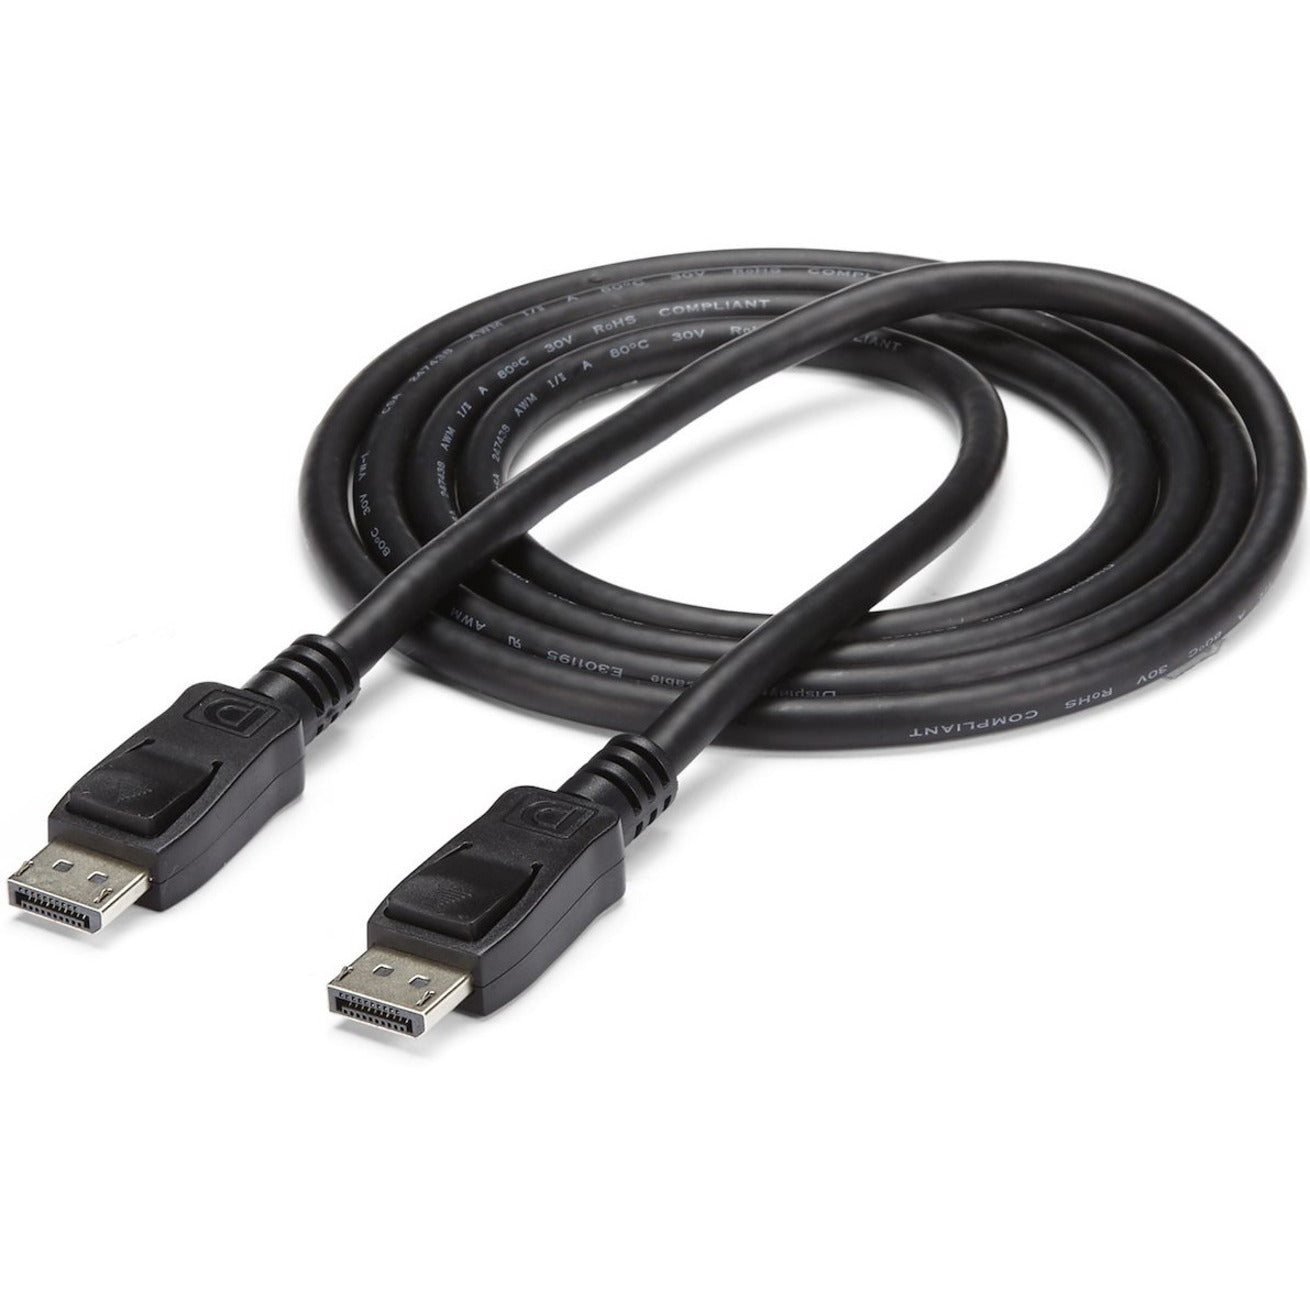 StarTech.com DISPLPORT20L 20 ft DisplayPort-Kabel mit Riegeln - M/M High-Speed-Video-Kabel für Notebooks Monitore und mehr